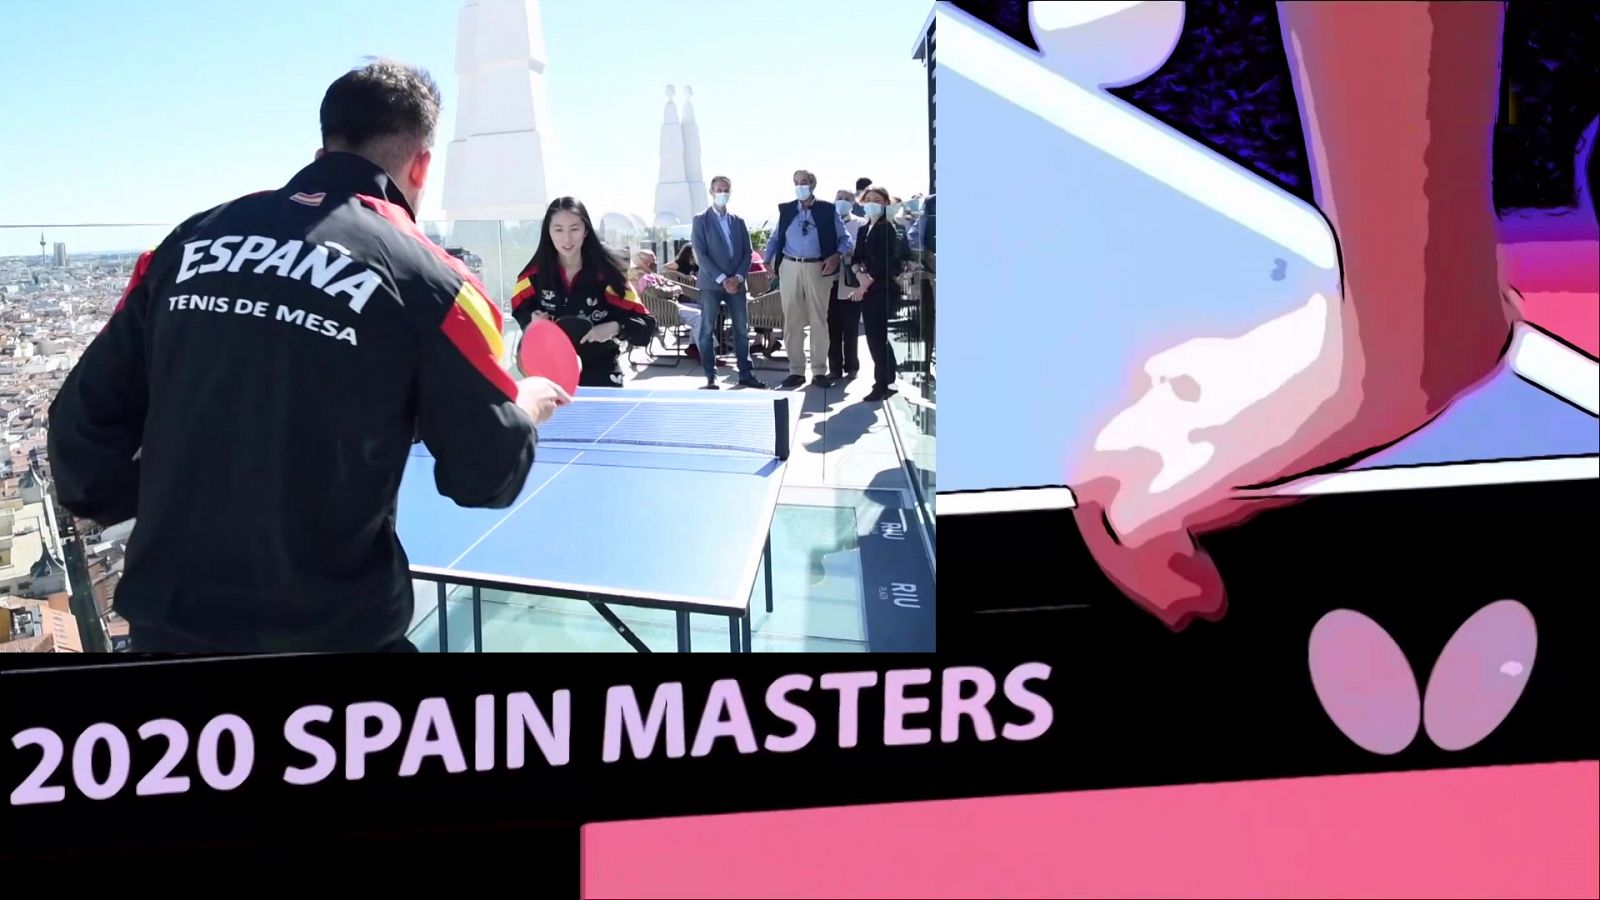 Tenis de mesa - Spain Masters 2020 - RTVE.es